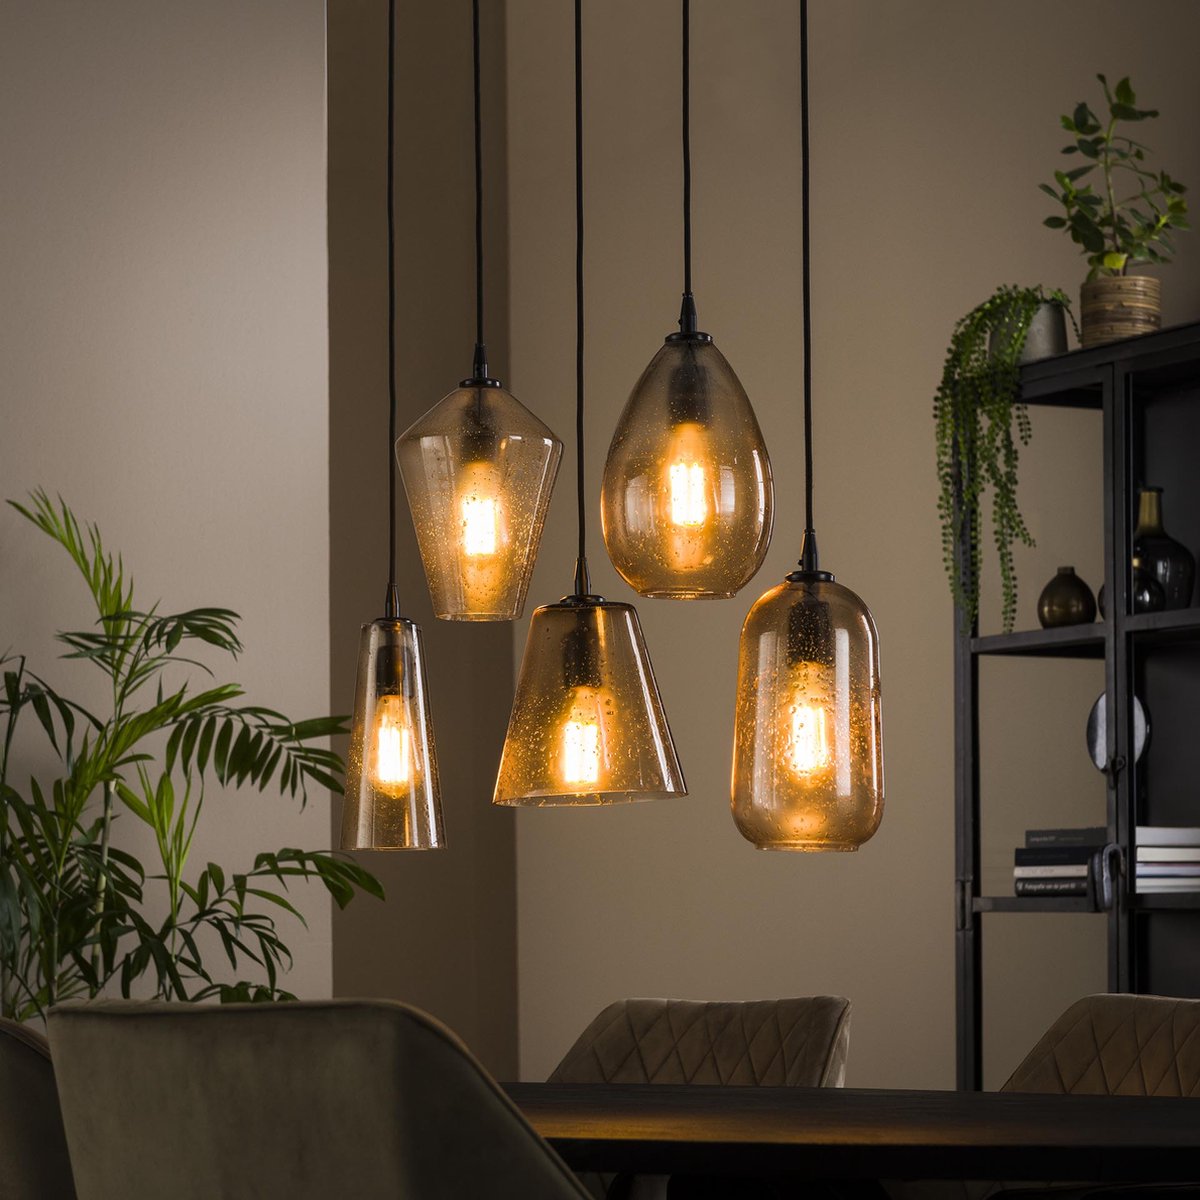 Hanglamp Stone Glass mix | 5 lichts | 96 cm breed | tot 150 cm in hoogte verselbaar | amber / bruin / zwart | landelijk / modern design